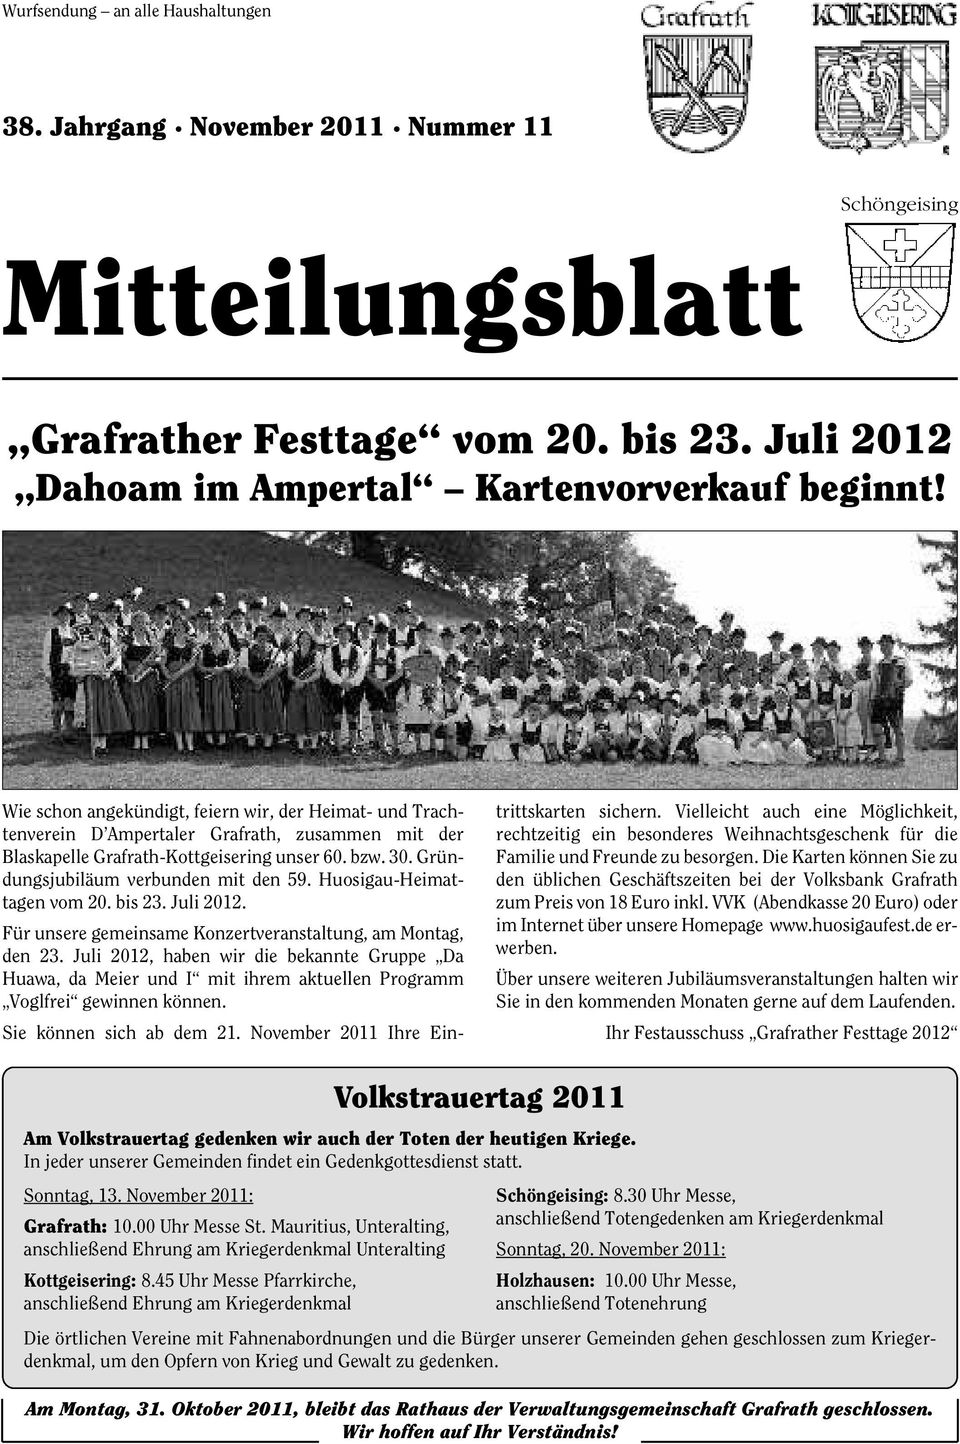 Gründungsjubiläum verbunden mit den 59. Huosigau-Heimat - tagen vom 20. bis 23. Juli 2012. Für unsere gemeinsame Konzertveranstaltung, am Montag, den 23.